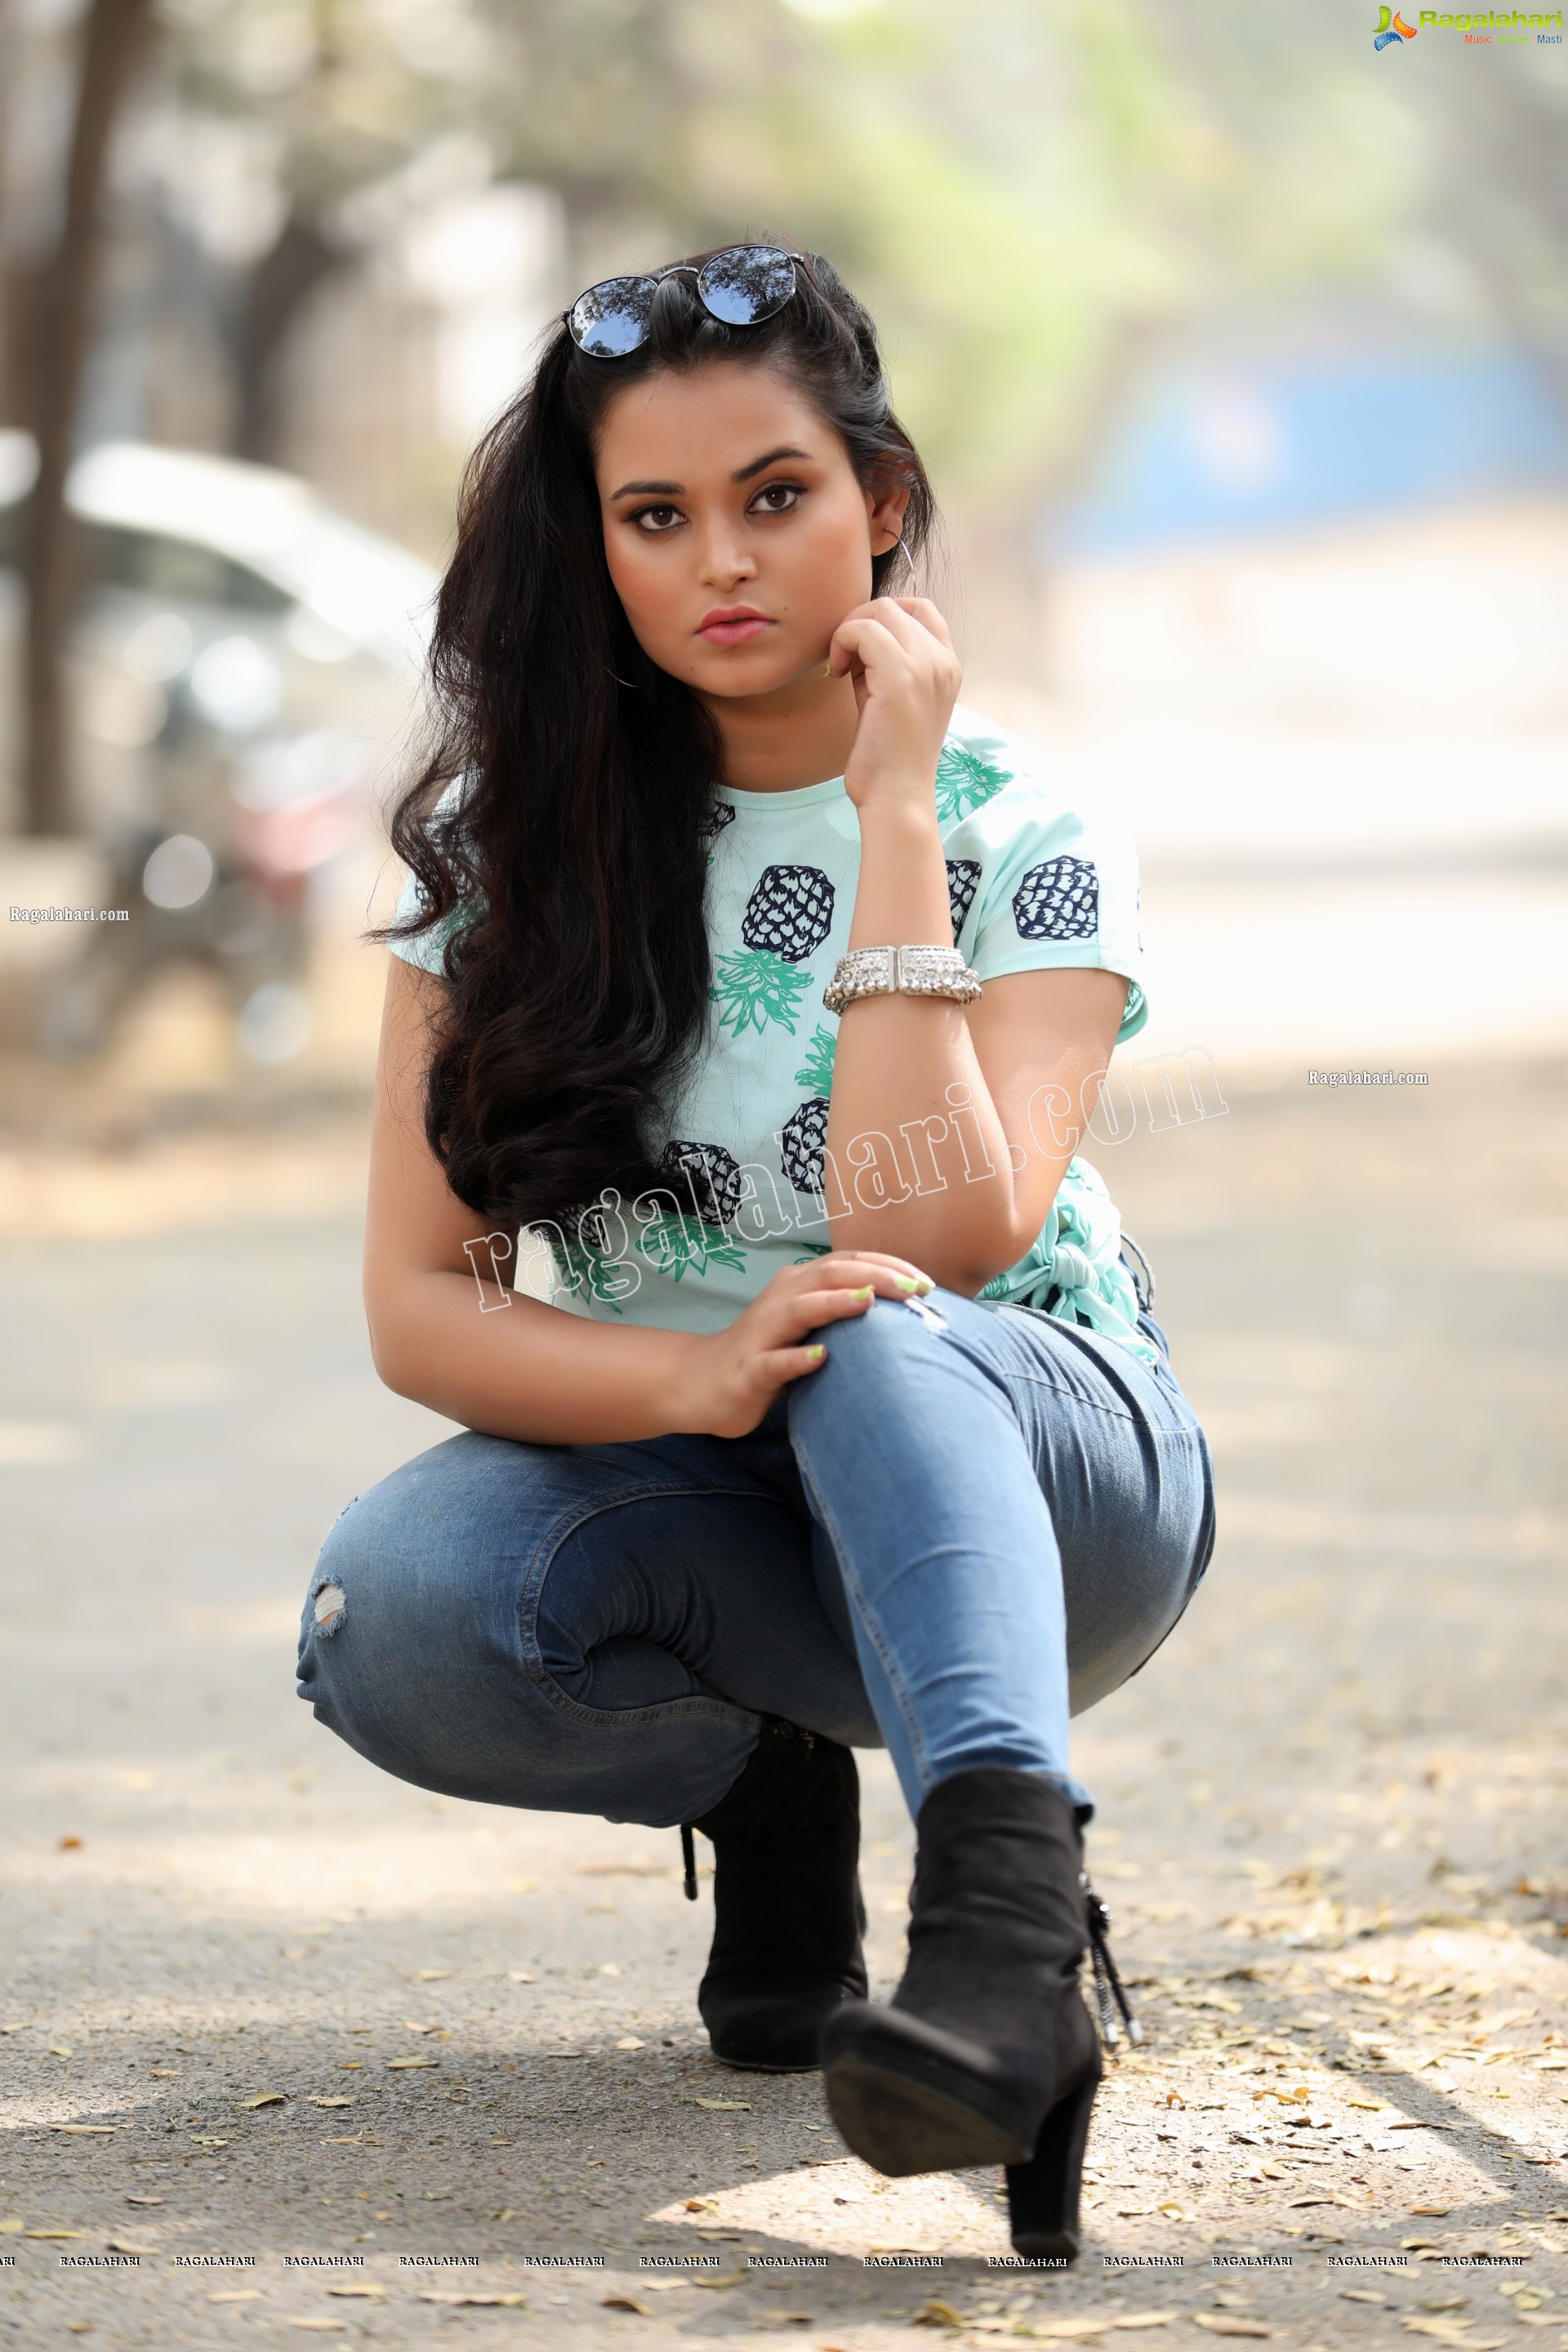 Vaanya Aggarwal in Skyblue Pineapple Print Side Knot Crop Top, Exclusive Studio Shoot